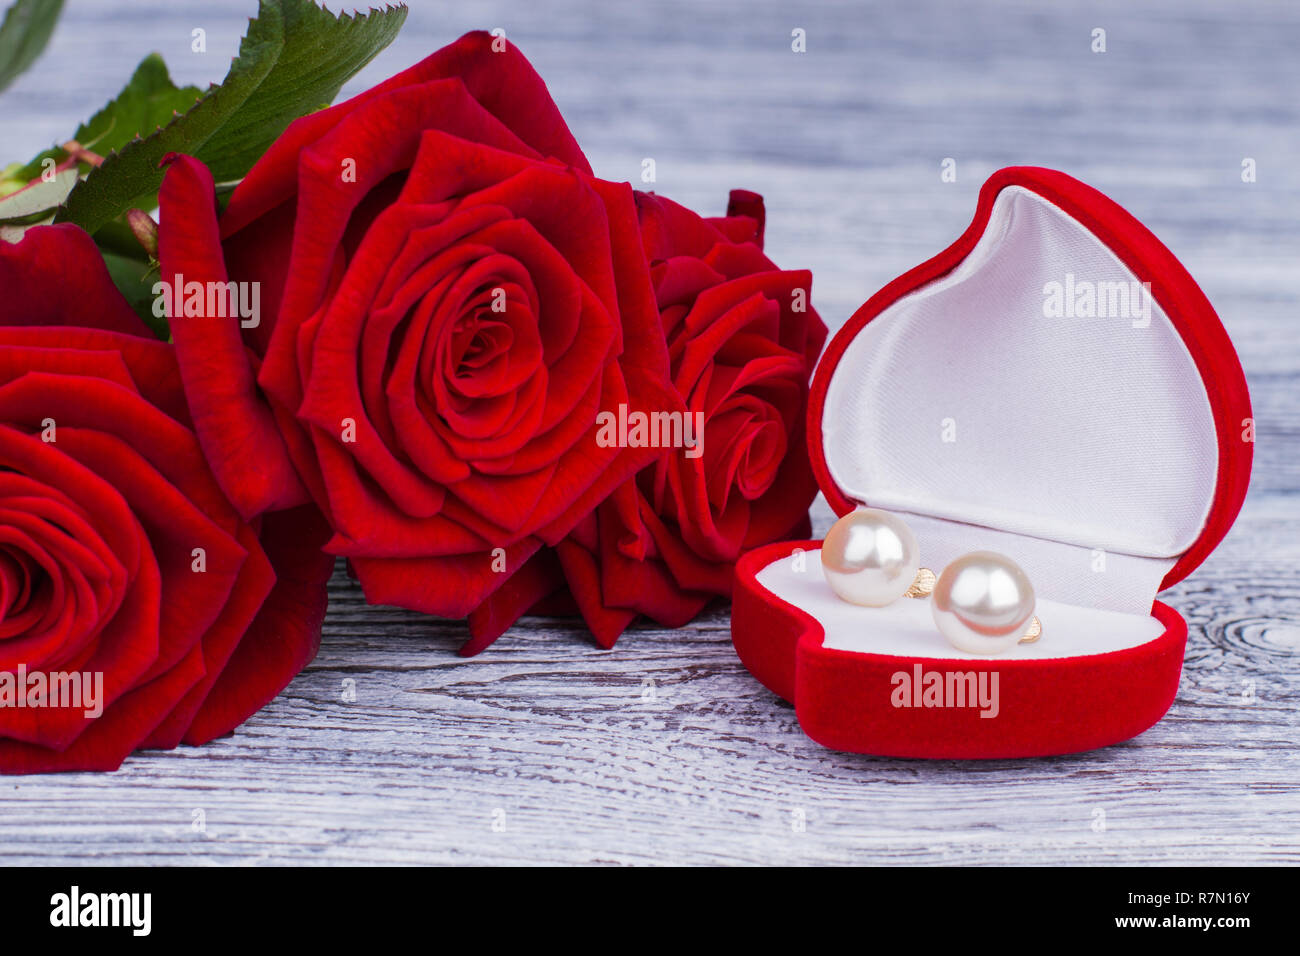 Ohrringe Schmuck Kästchen und rote Rosen. Rot blühenden Rosen und eine  Kiste mit Gold Schmuck auf Holz- Hintergrund. Valentinstag, Geburtstag oder  Hochzeit Stockfotografie - Alamy